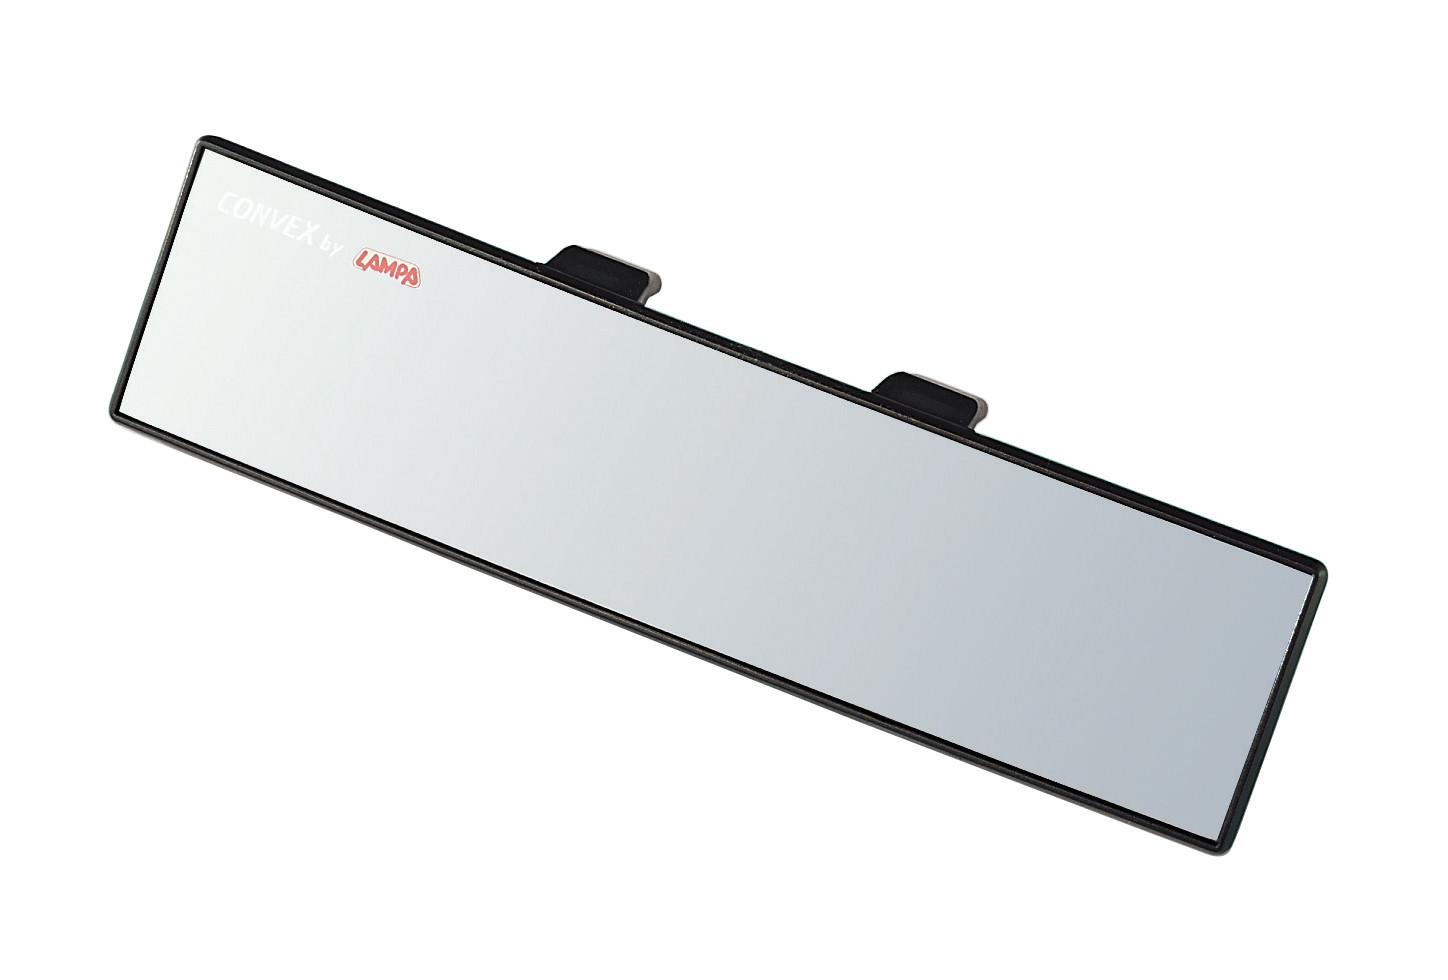 Konvex belső visszapillantó tükör 300x65mm thumb